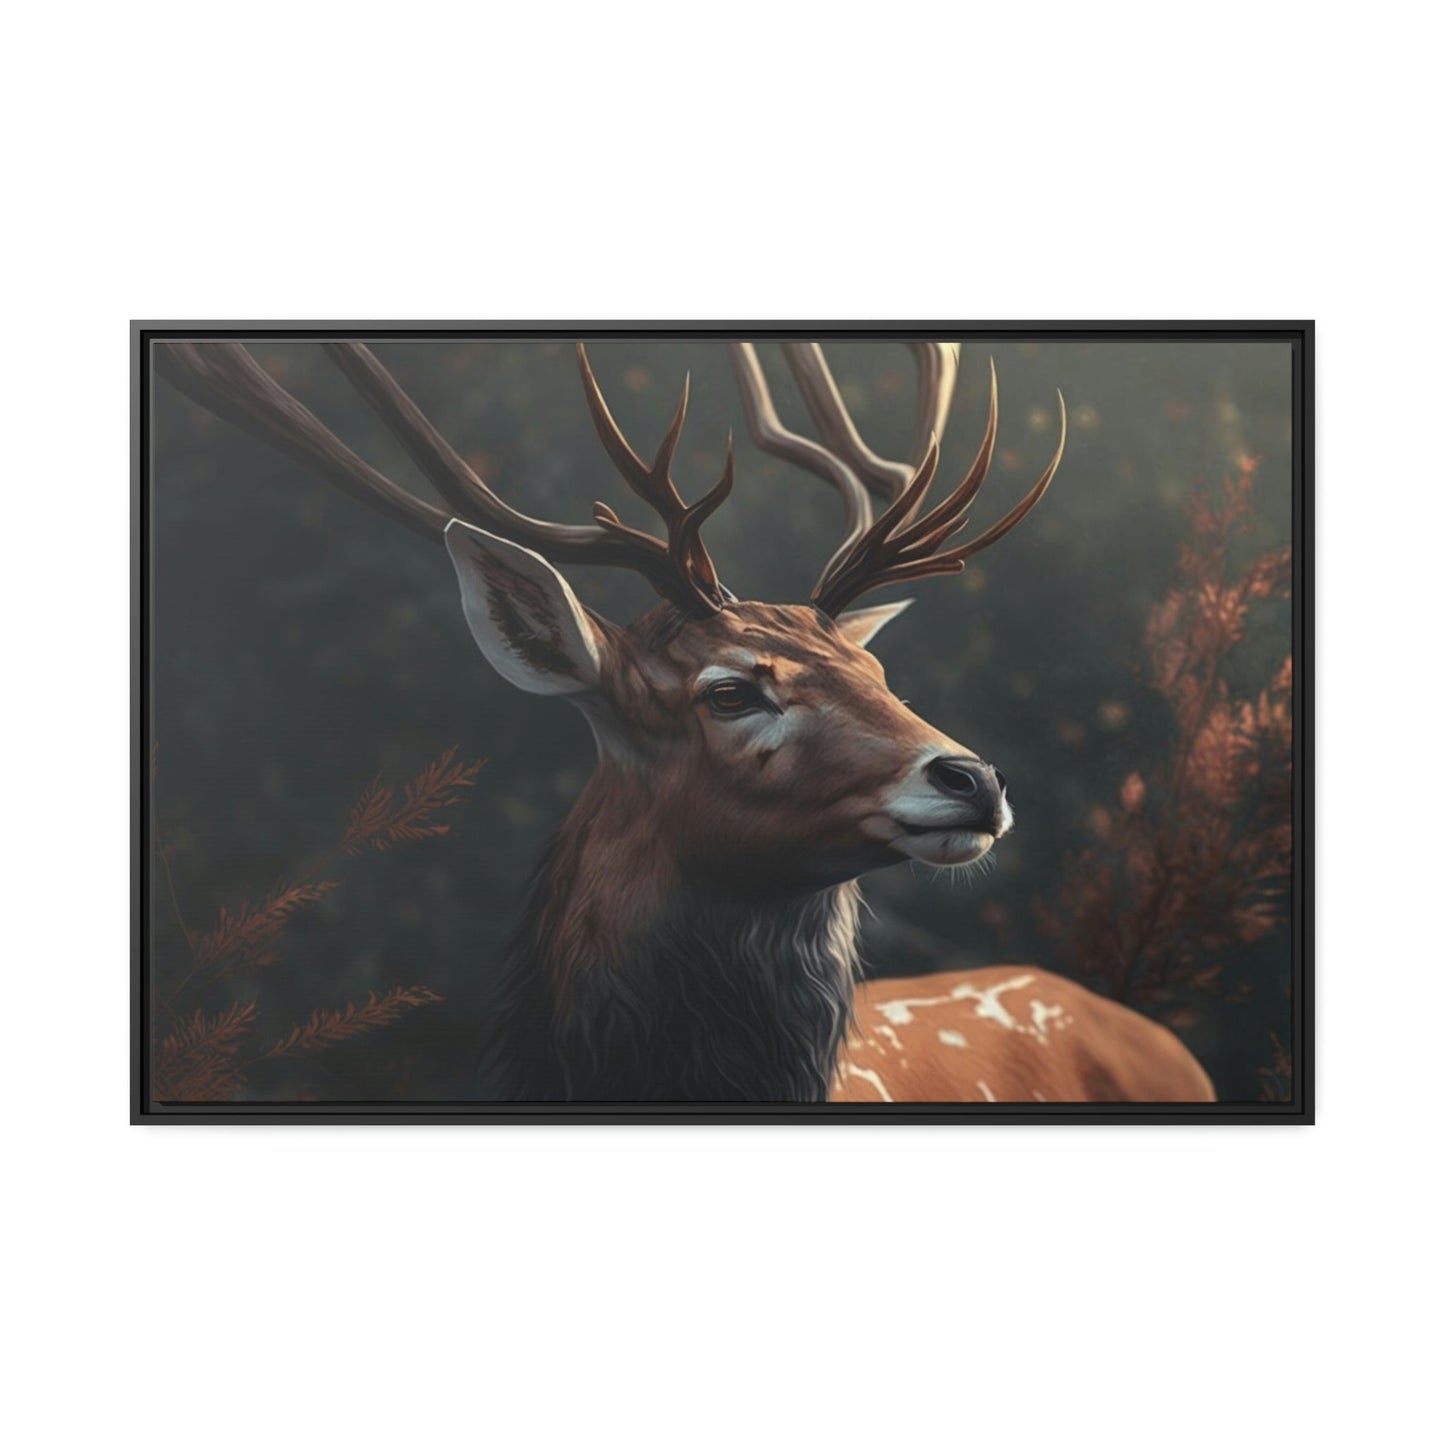 Deer's Solitude: A Canvas Wildlife Contemplation